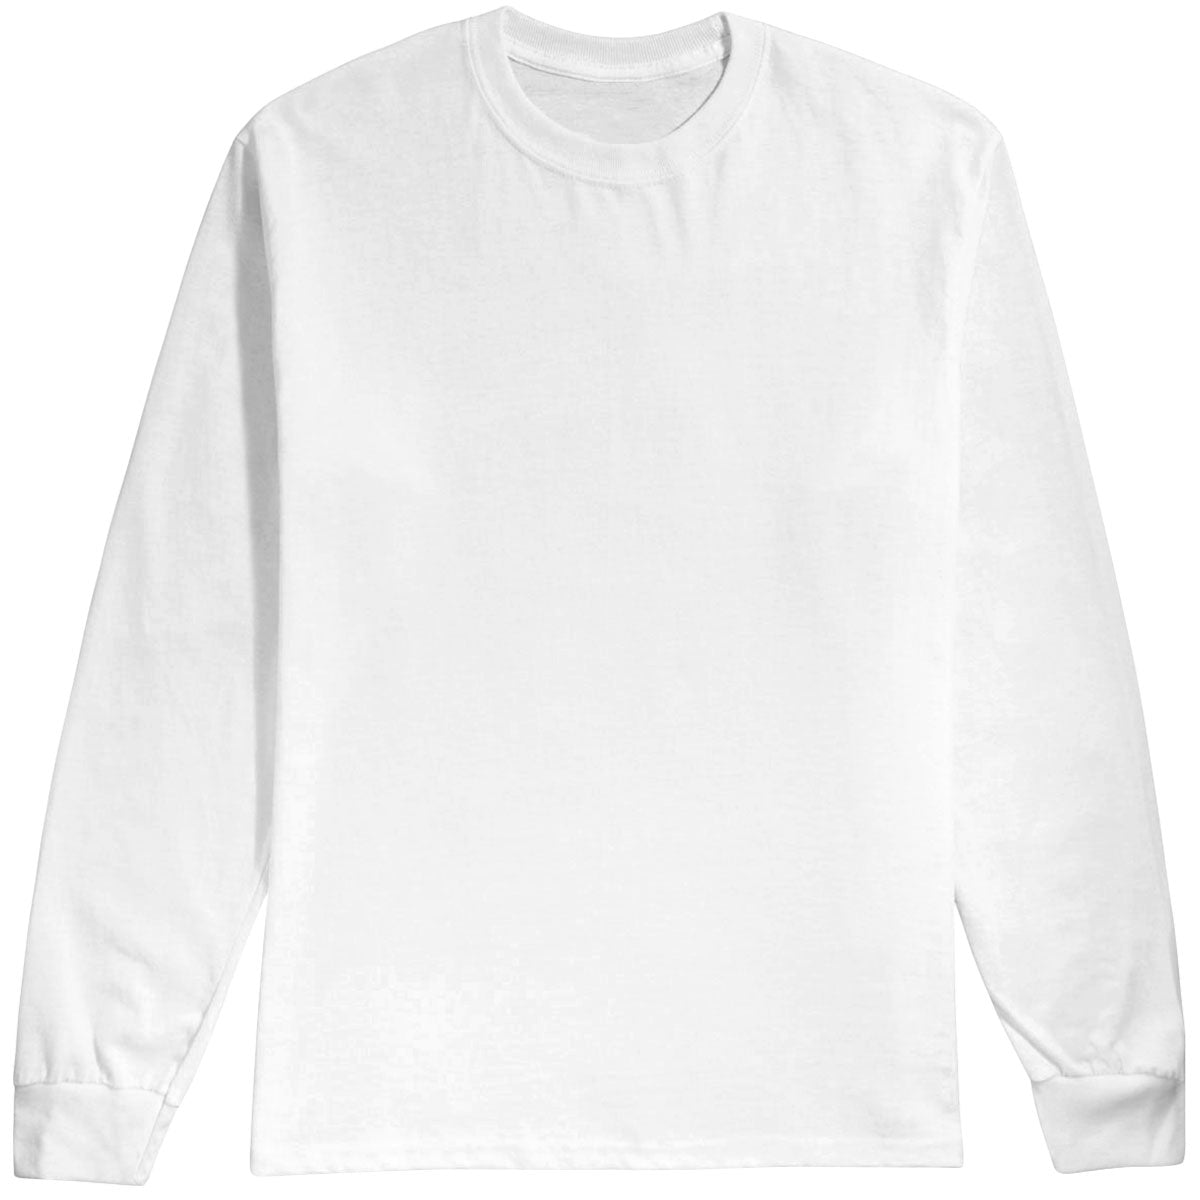 Alien Workshop Triad Sticker Long Sleeve T-Shirt - White - XXL image 1